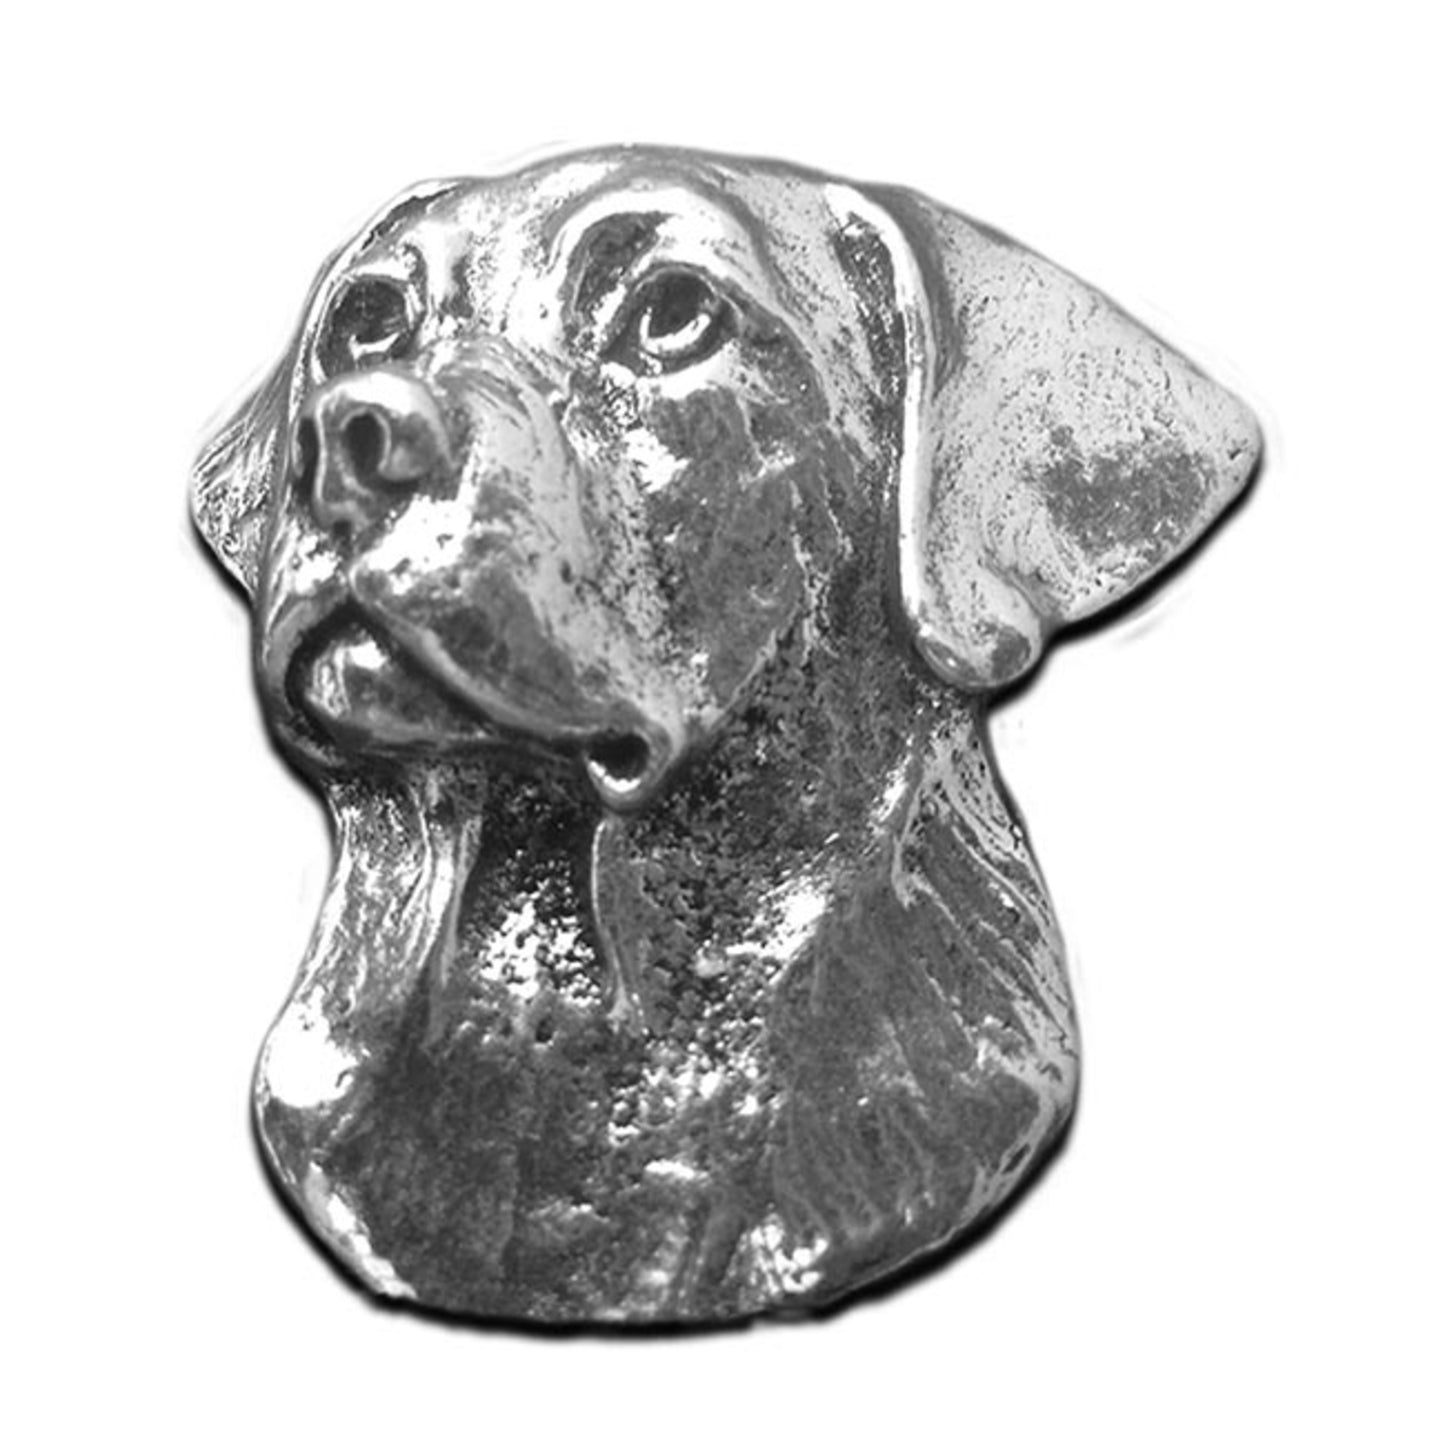 Labrador Pewter Magnet